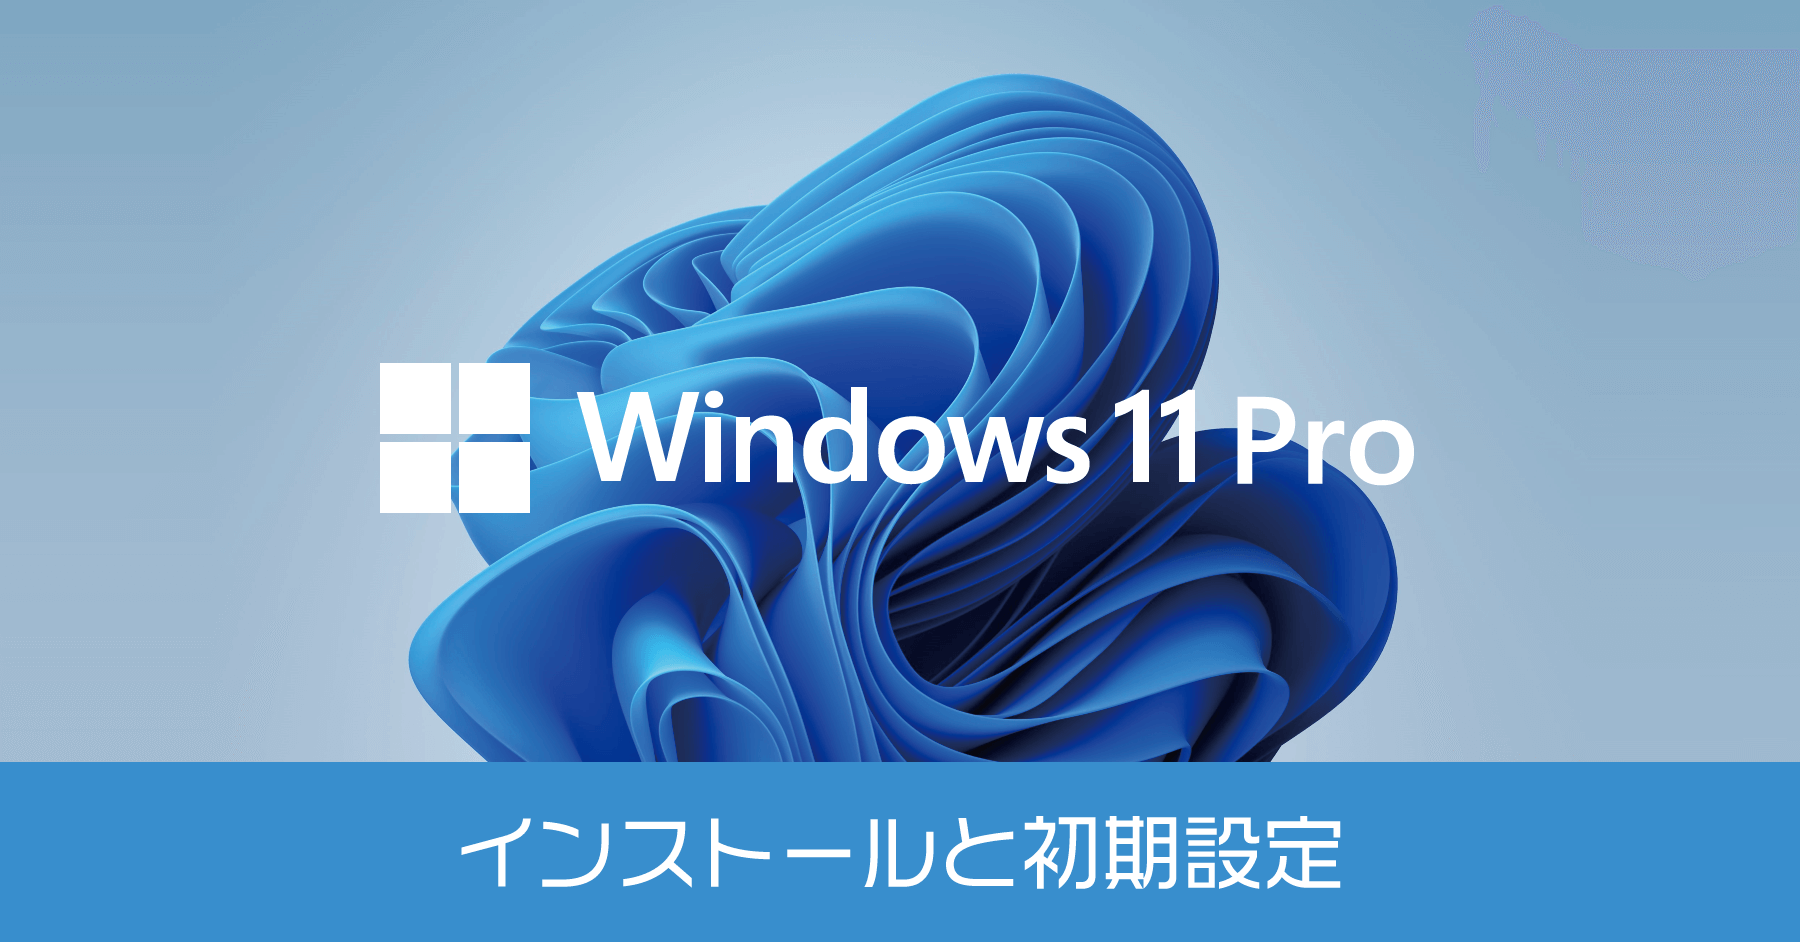 【自作PC】Windows 11 Pro のインストールと初期設定の方法 